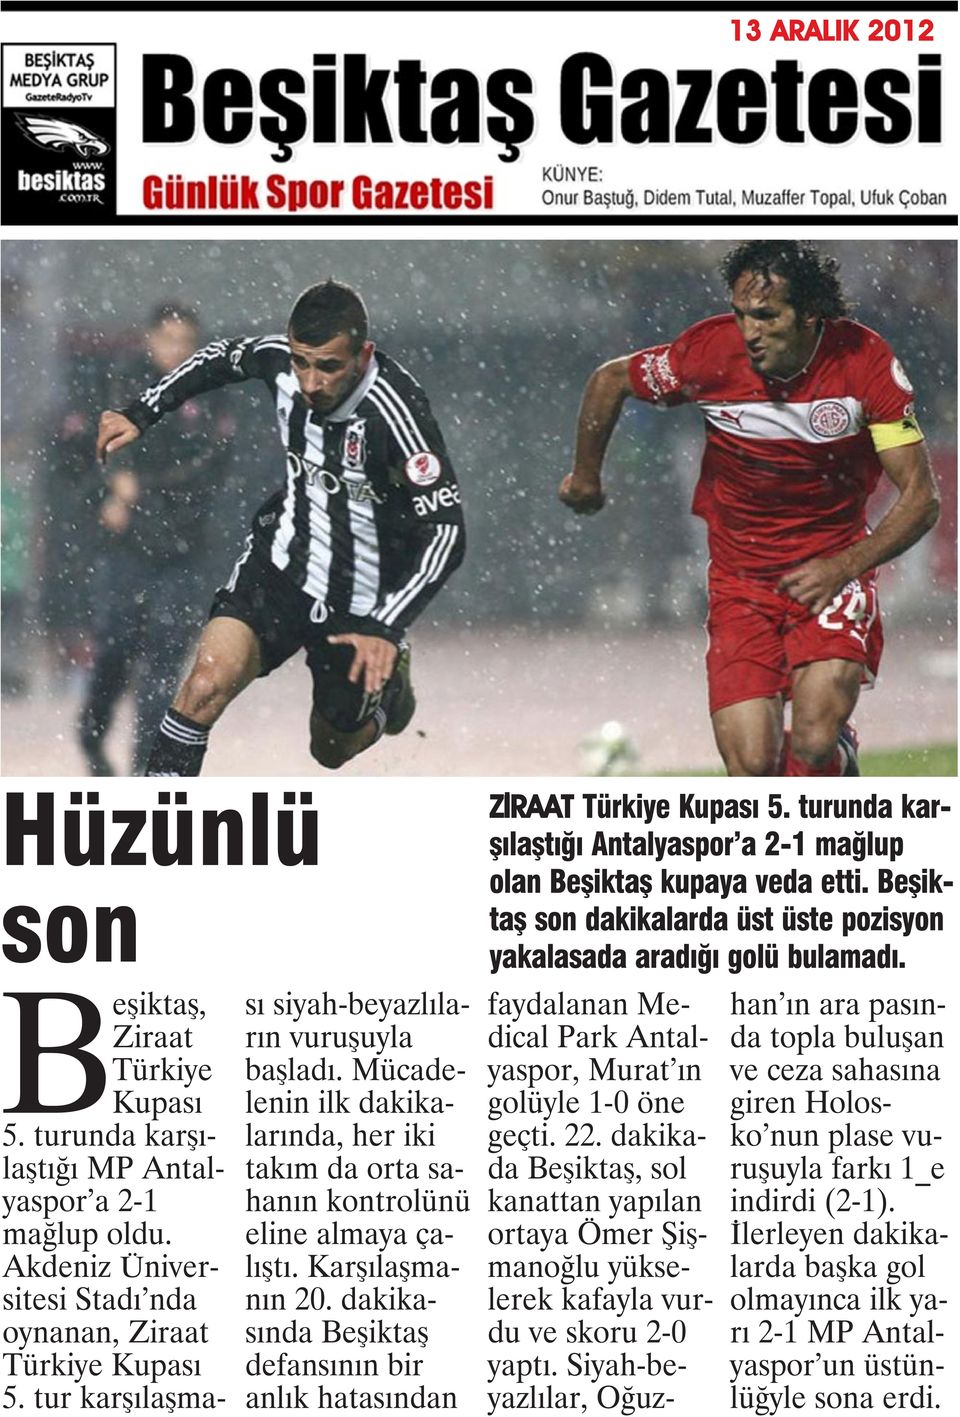 dakikasında Beşiktaş defansının bir anlık hatasından ZİRAAT Türkiye Kupası 5. turunda karşılaştığı Antalyaspor a 2-1 mağlup olan Beşiktaş kupaya veda etti.